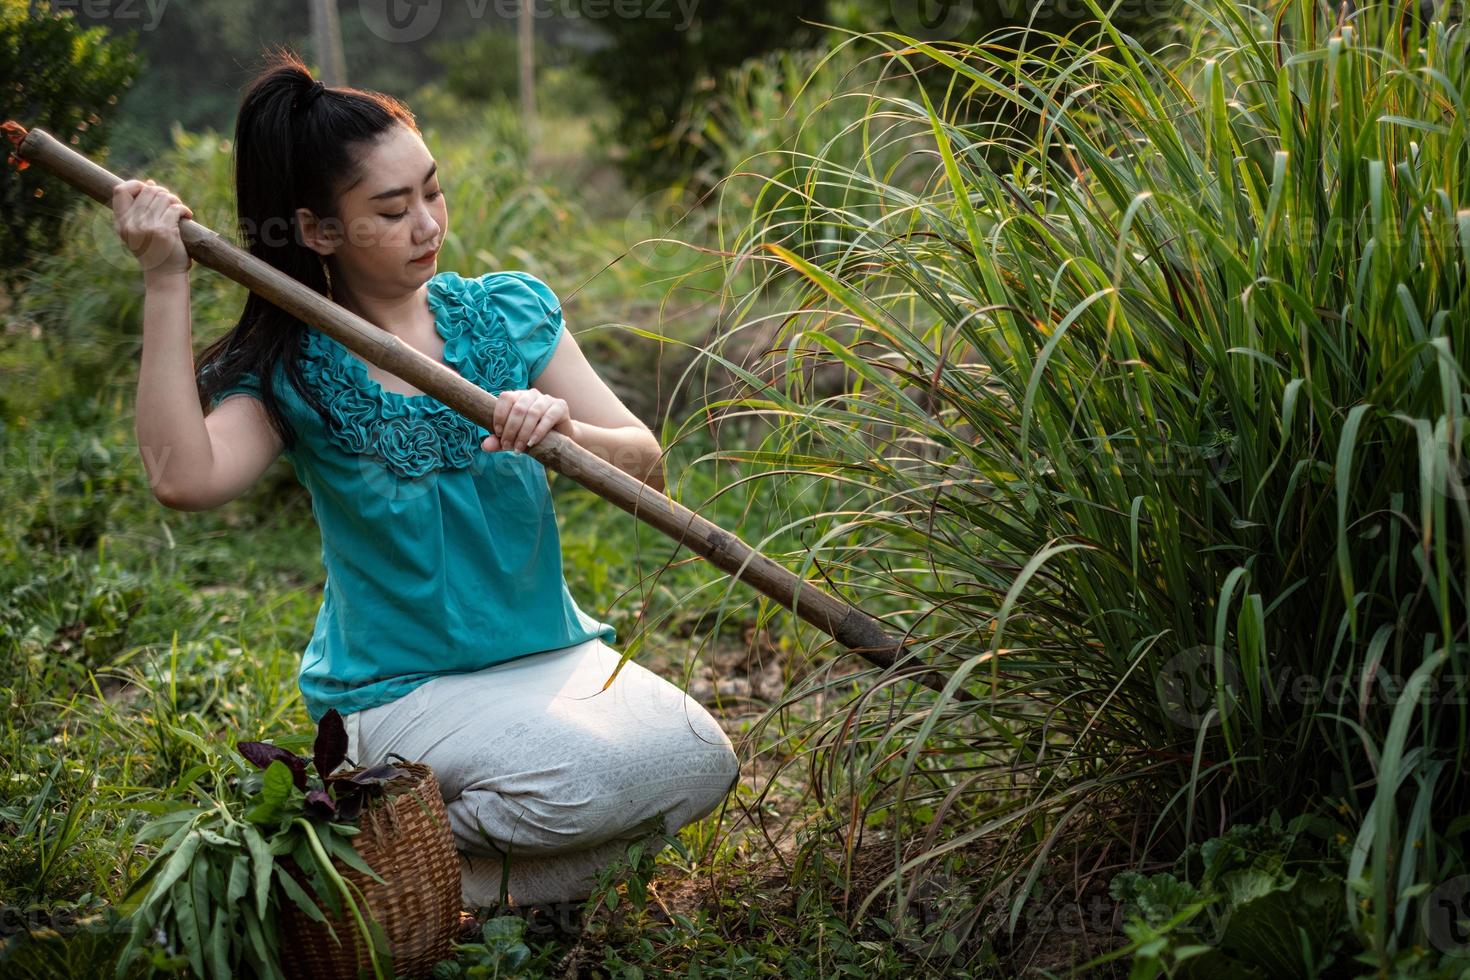 mode de vie d'une femme d'Asie rurale déterrant de la citronnelle dans un jardin, cultivant elle-même des légumes biologiques, concept de femmes asiatiques dans le domaine de la campagne en thaïlande photo